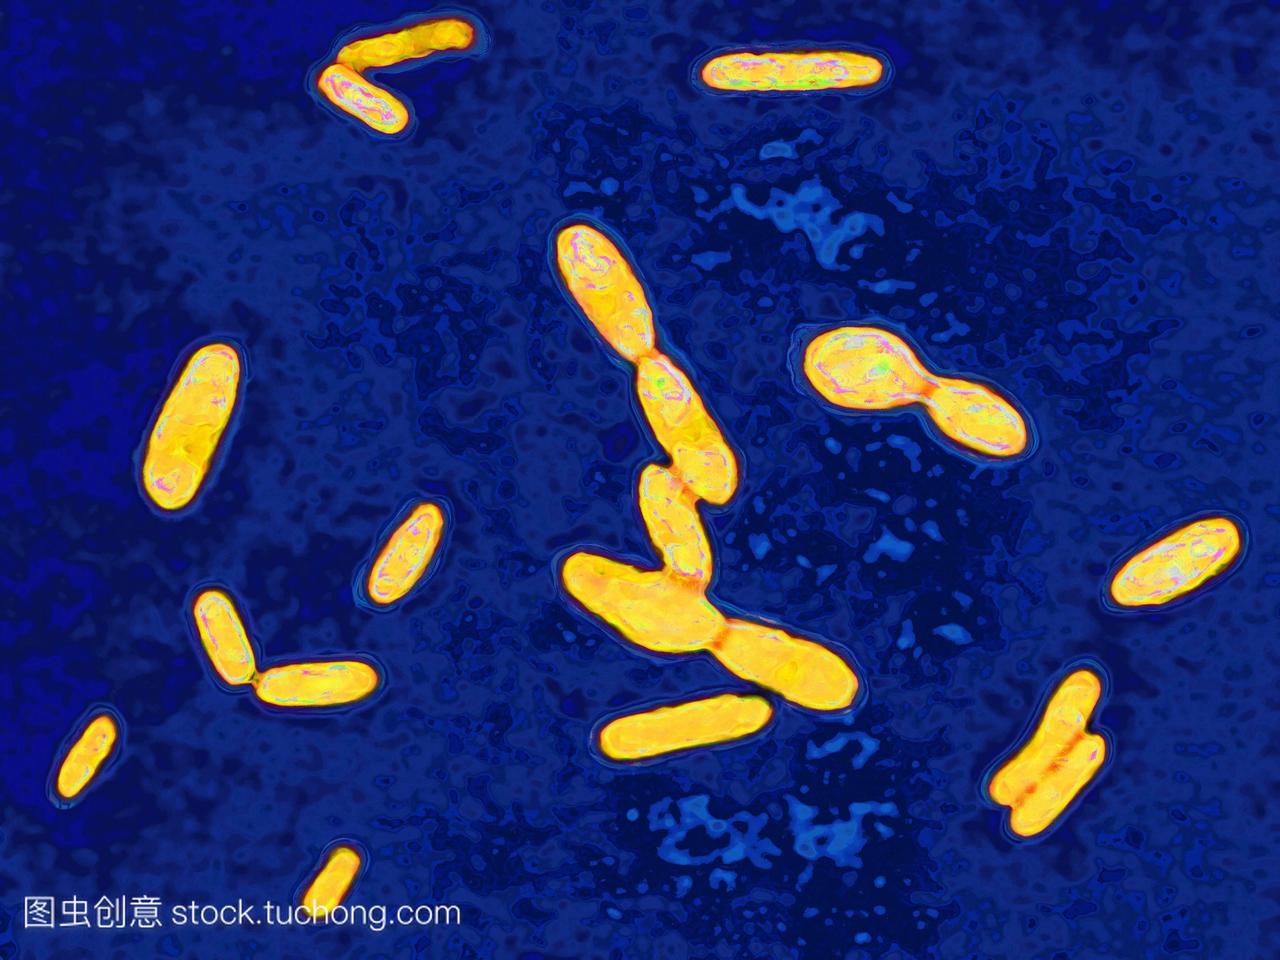 破伤风杆菌是破伤风的细菌。污染然而小伤口导